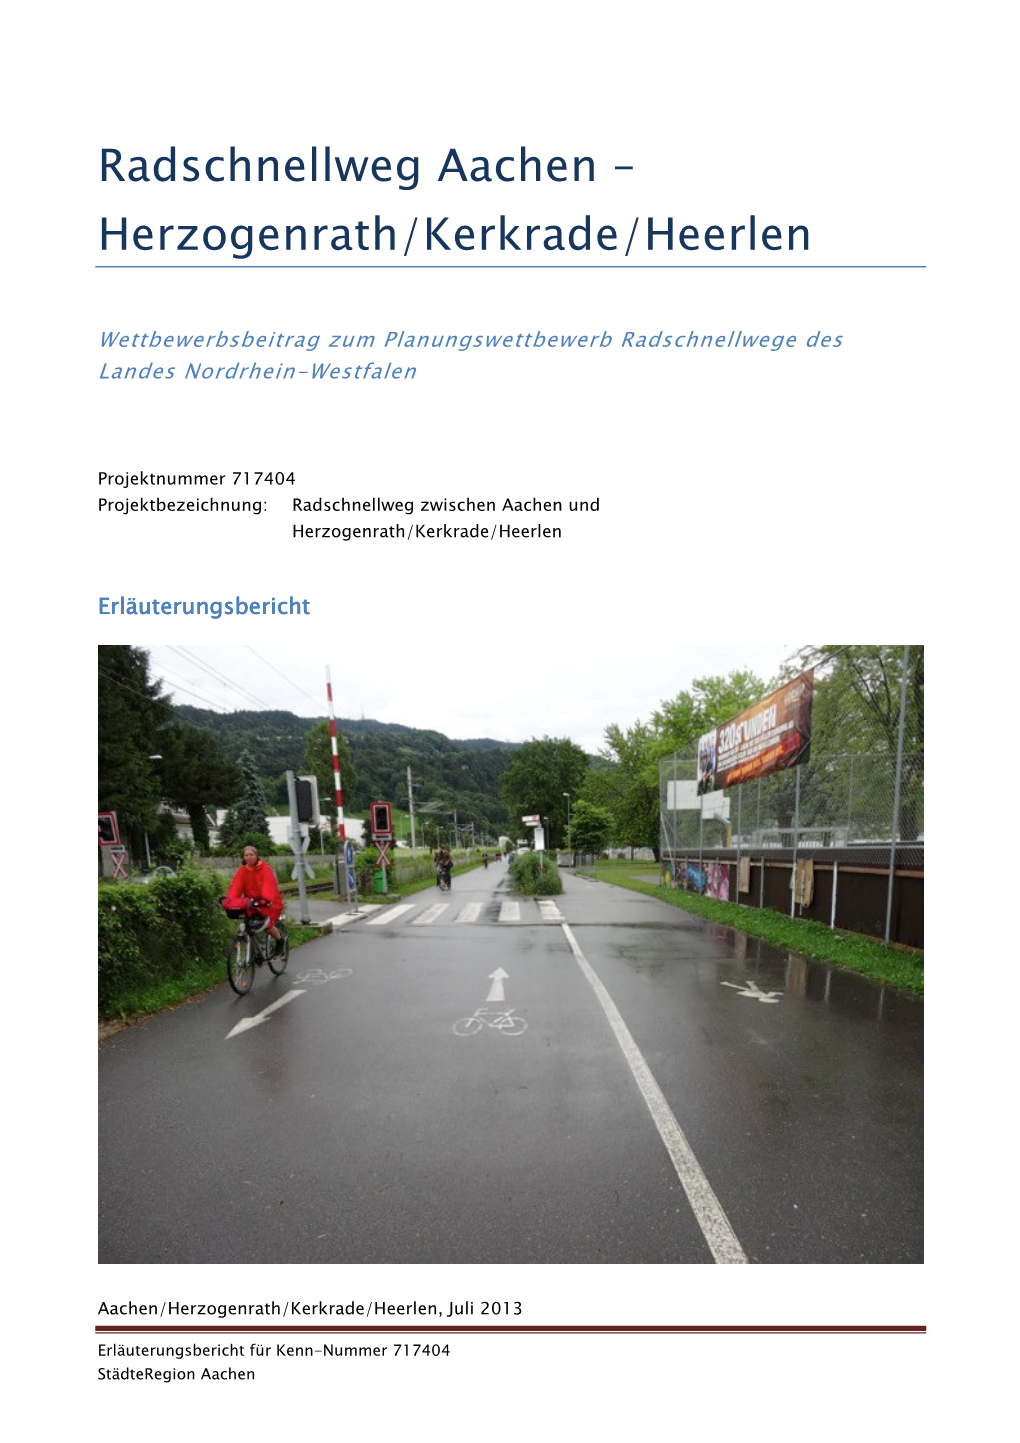 Herzogenrath/Kerkrade/Heerlen